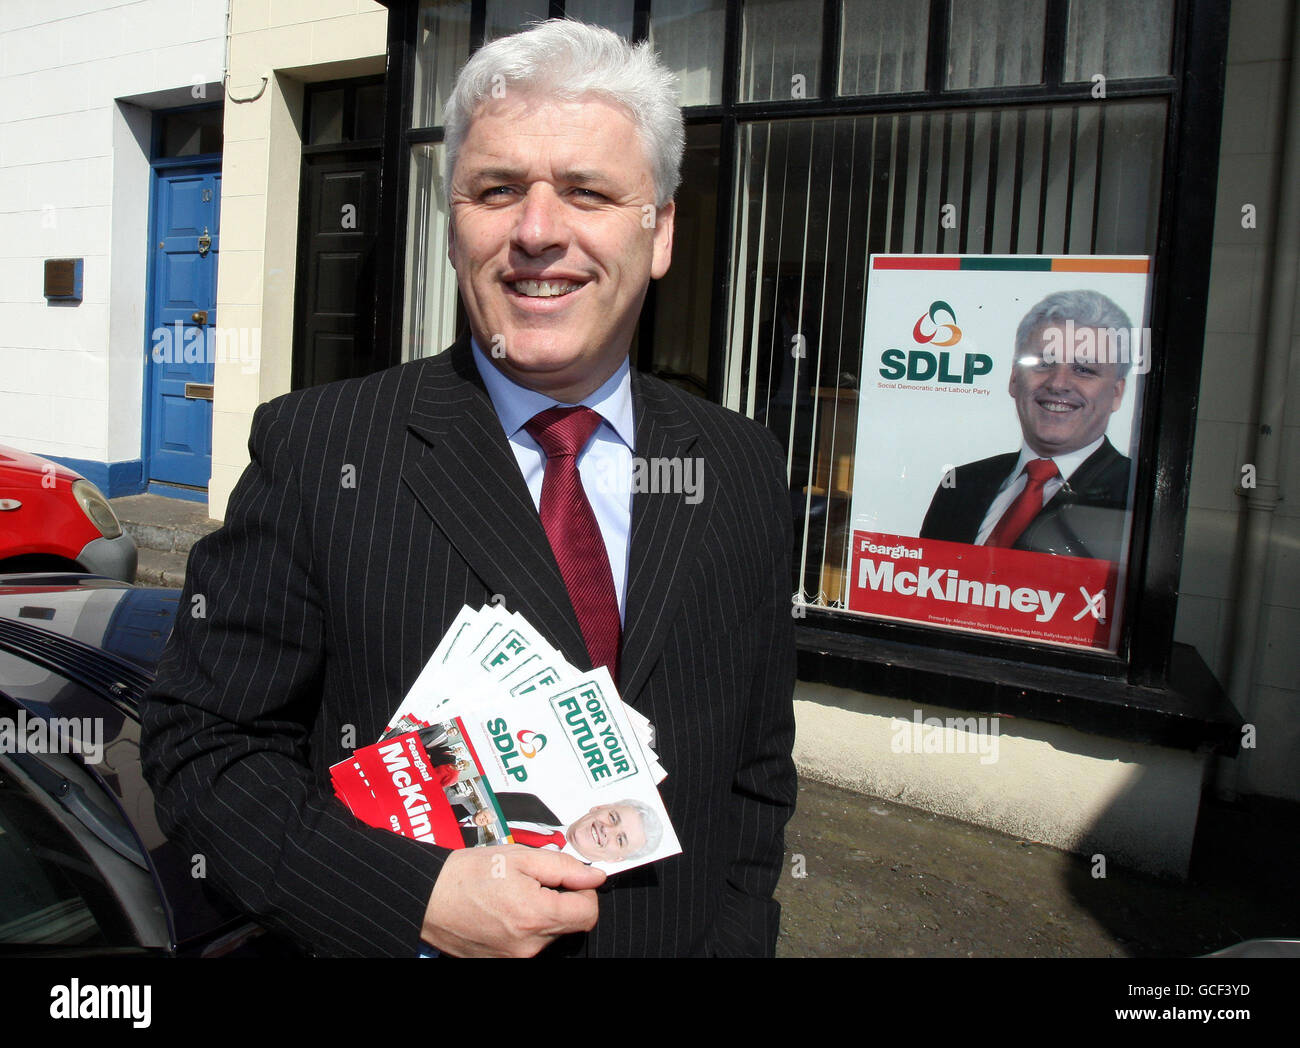 SDLP-Kandidat Fearghal McKinney, der bei den Parlamentswahlen in Fermanagh im Süden von Tyrone an der Wahlroute in Enniskillen steht. Stockfoto